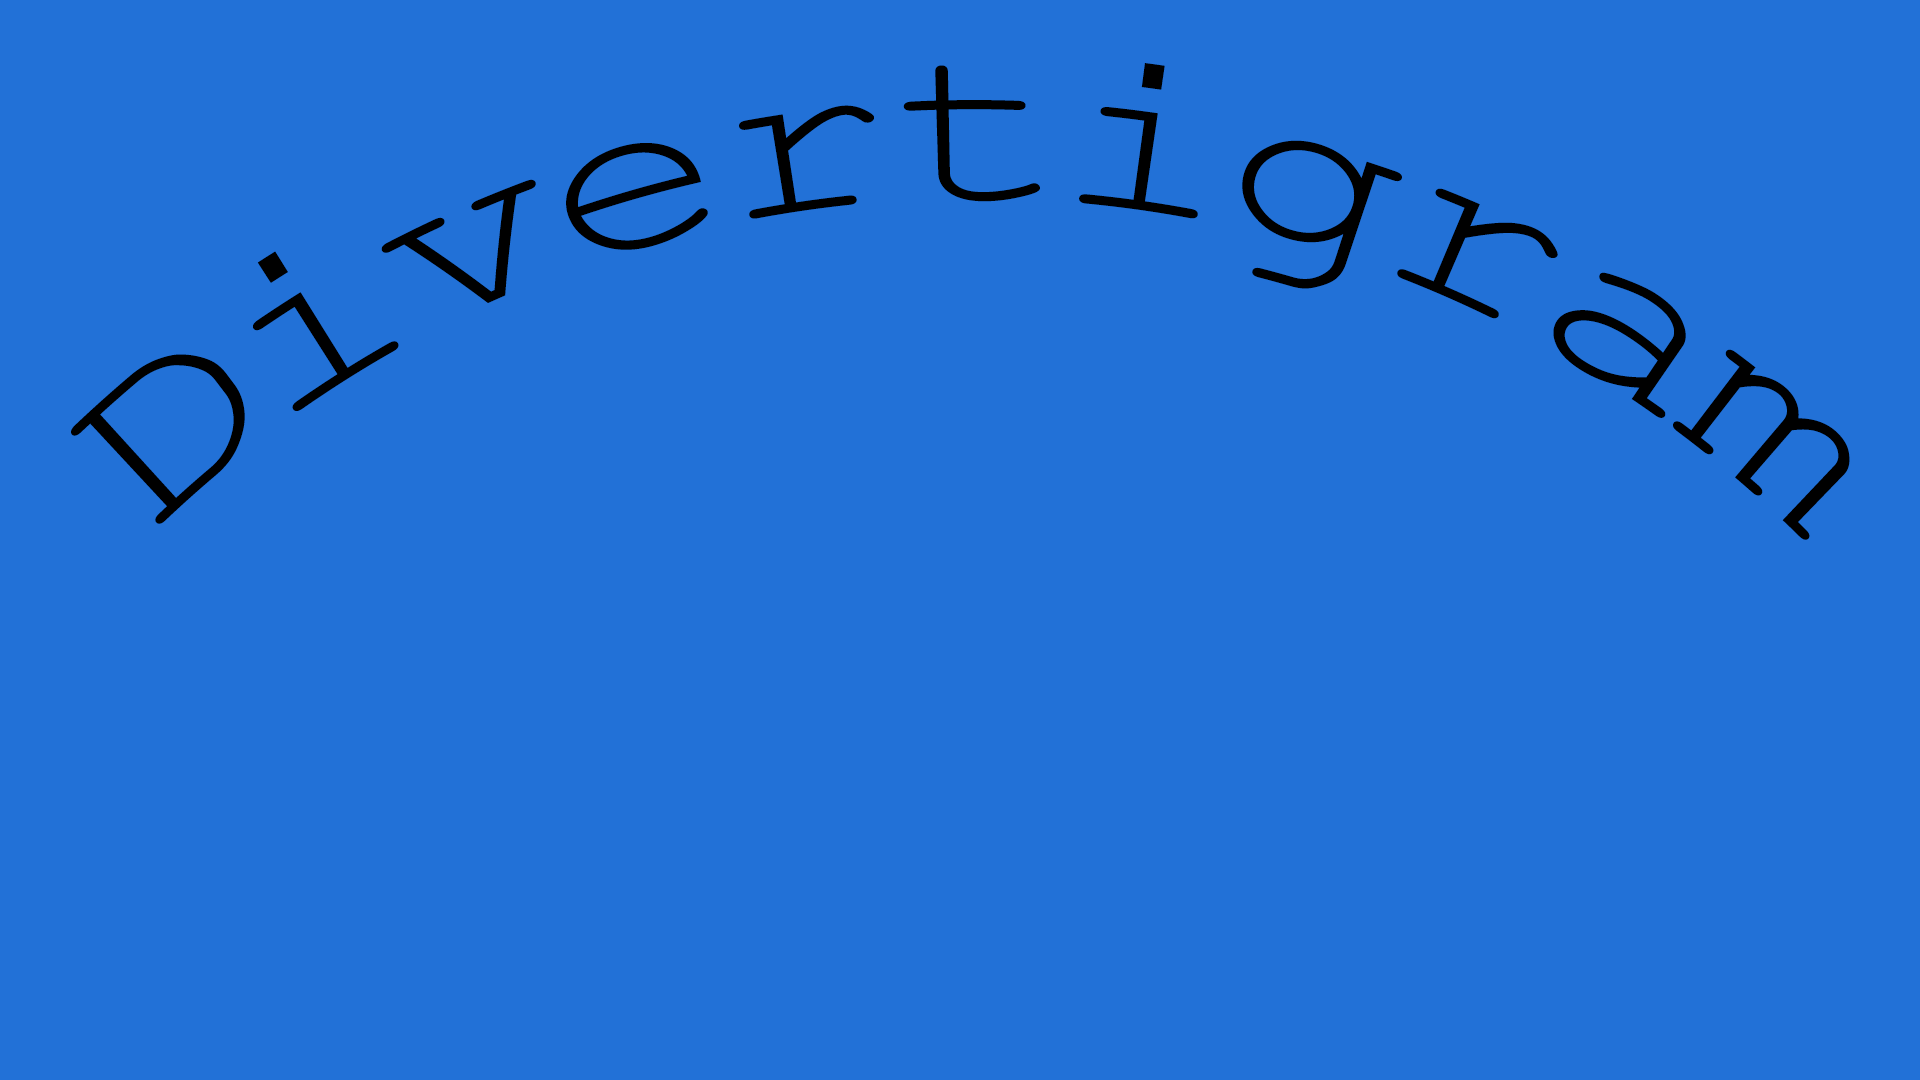 Divertigram